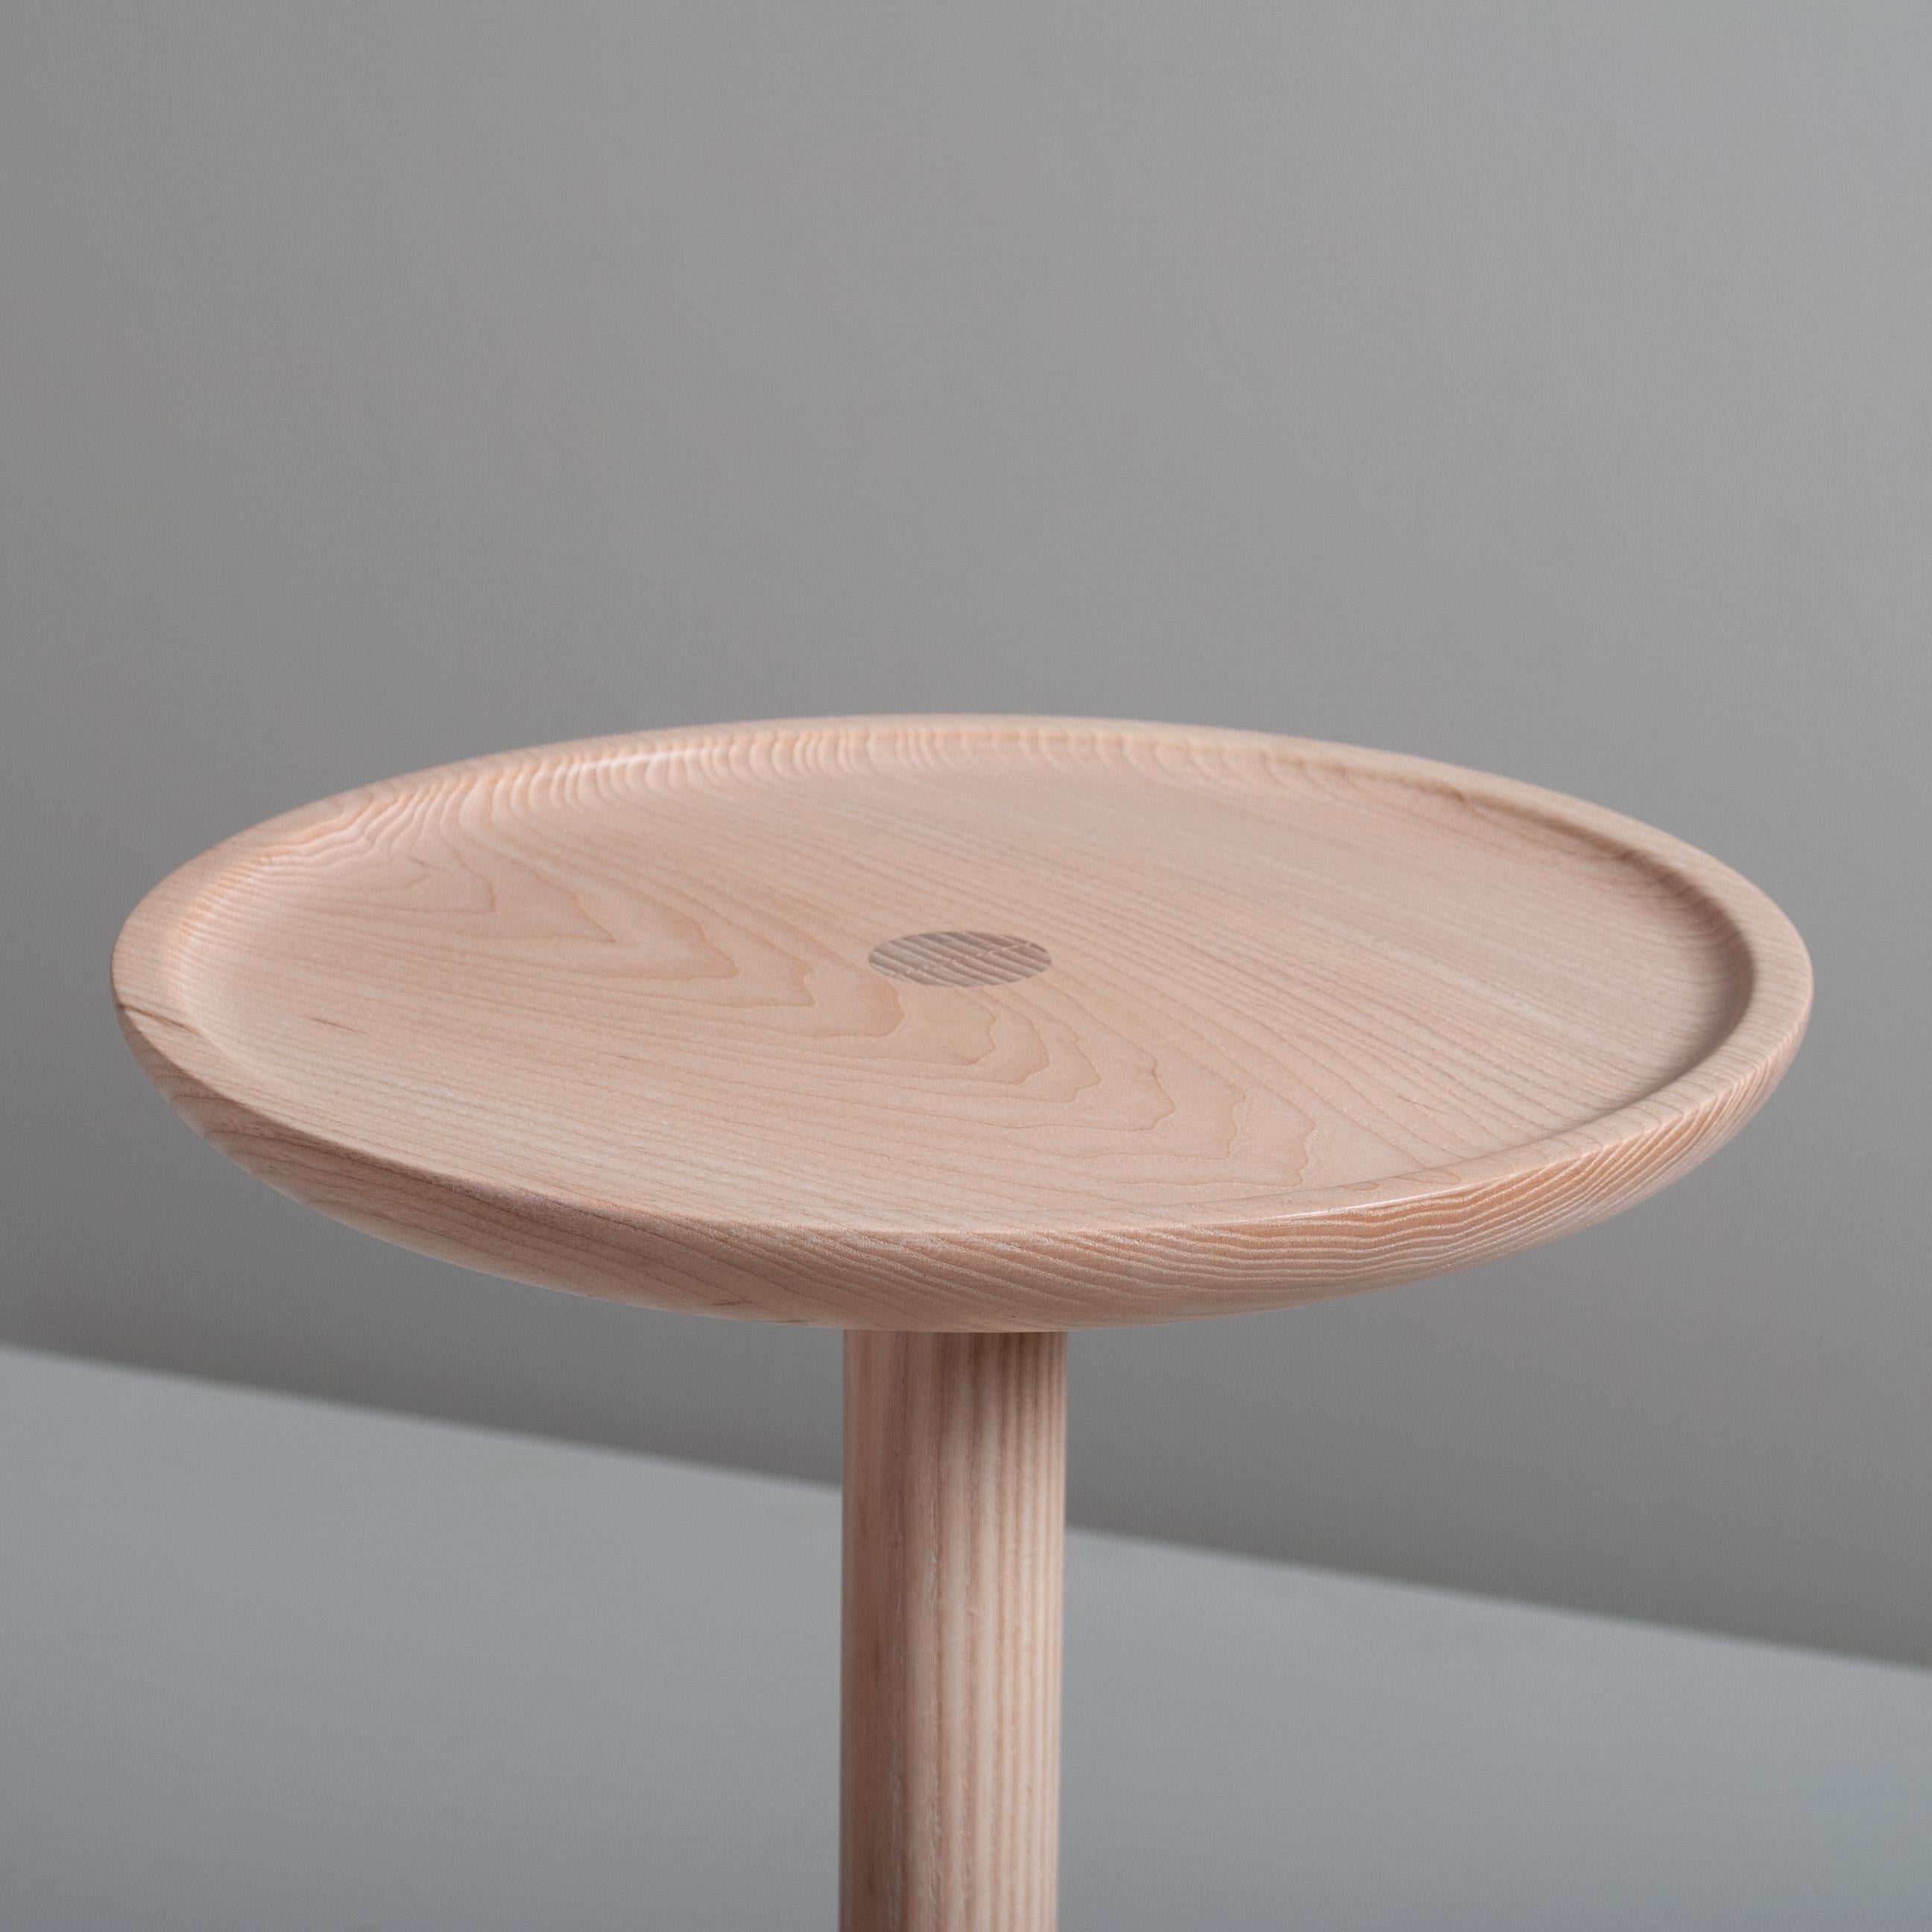 Magnifique table d'appoint en frêne anglais tourné et fabriqué à la main, au design moderniste. Une merveilleuse pièce d'artisanat. La surface supérieure présente un rebord concave 